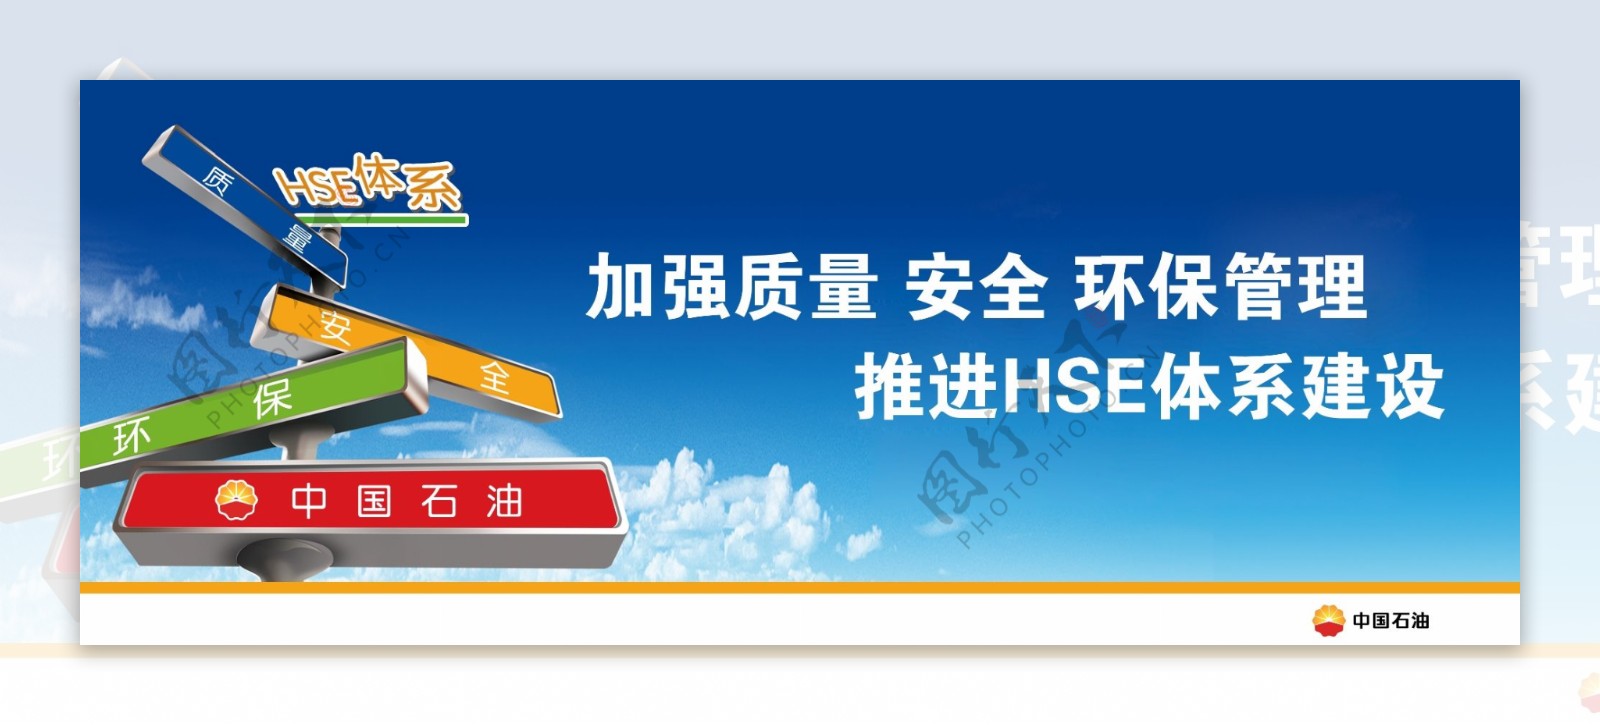 中国石油HSE体系海报图片